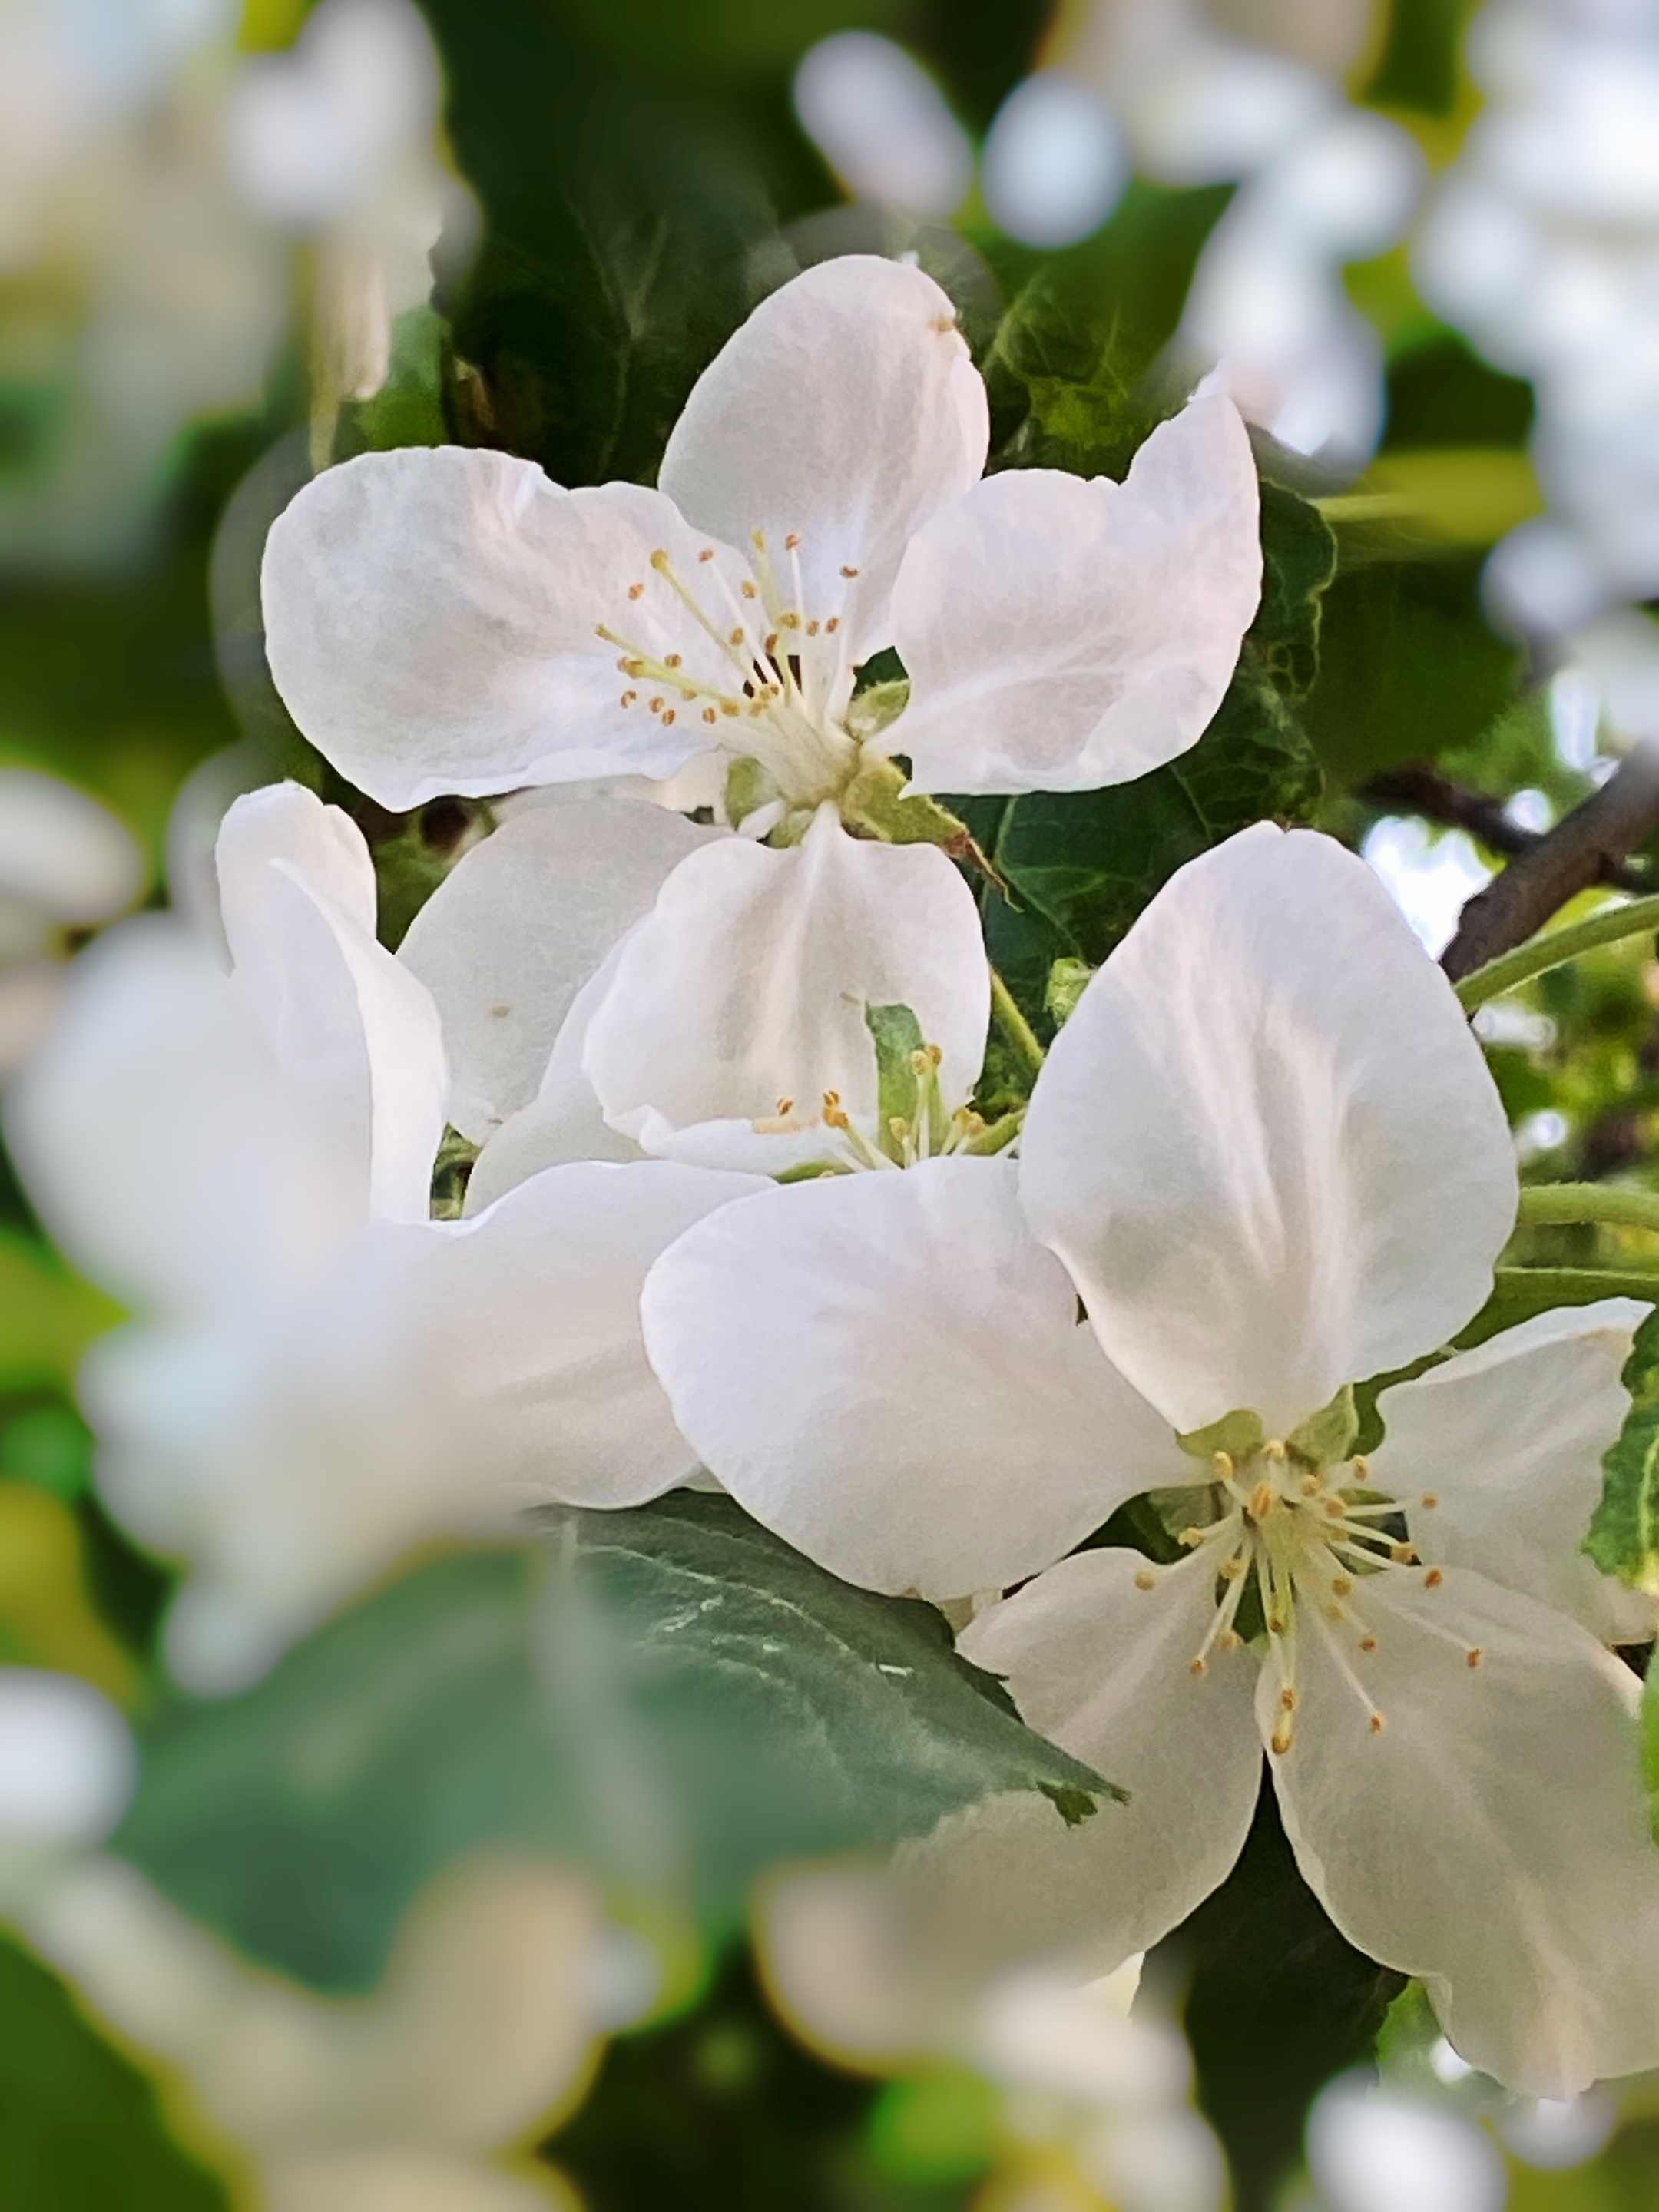 苹果花属蔷薇科,呈白色喇叭状,特别喜欢生长在温暖的地方.